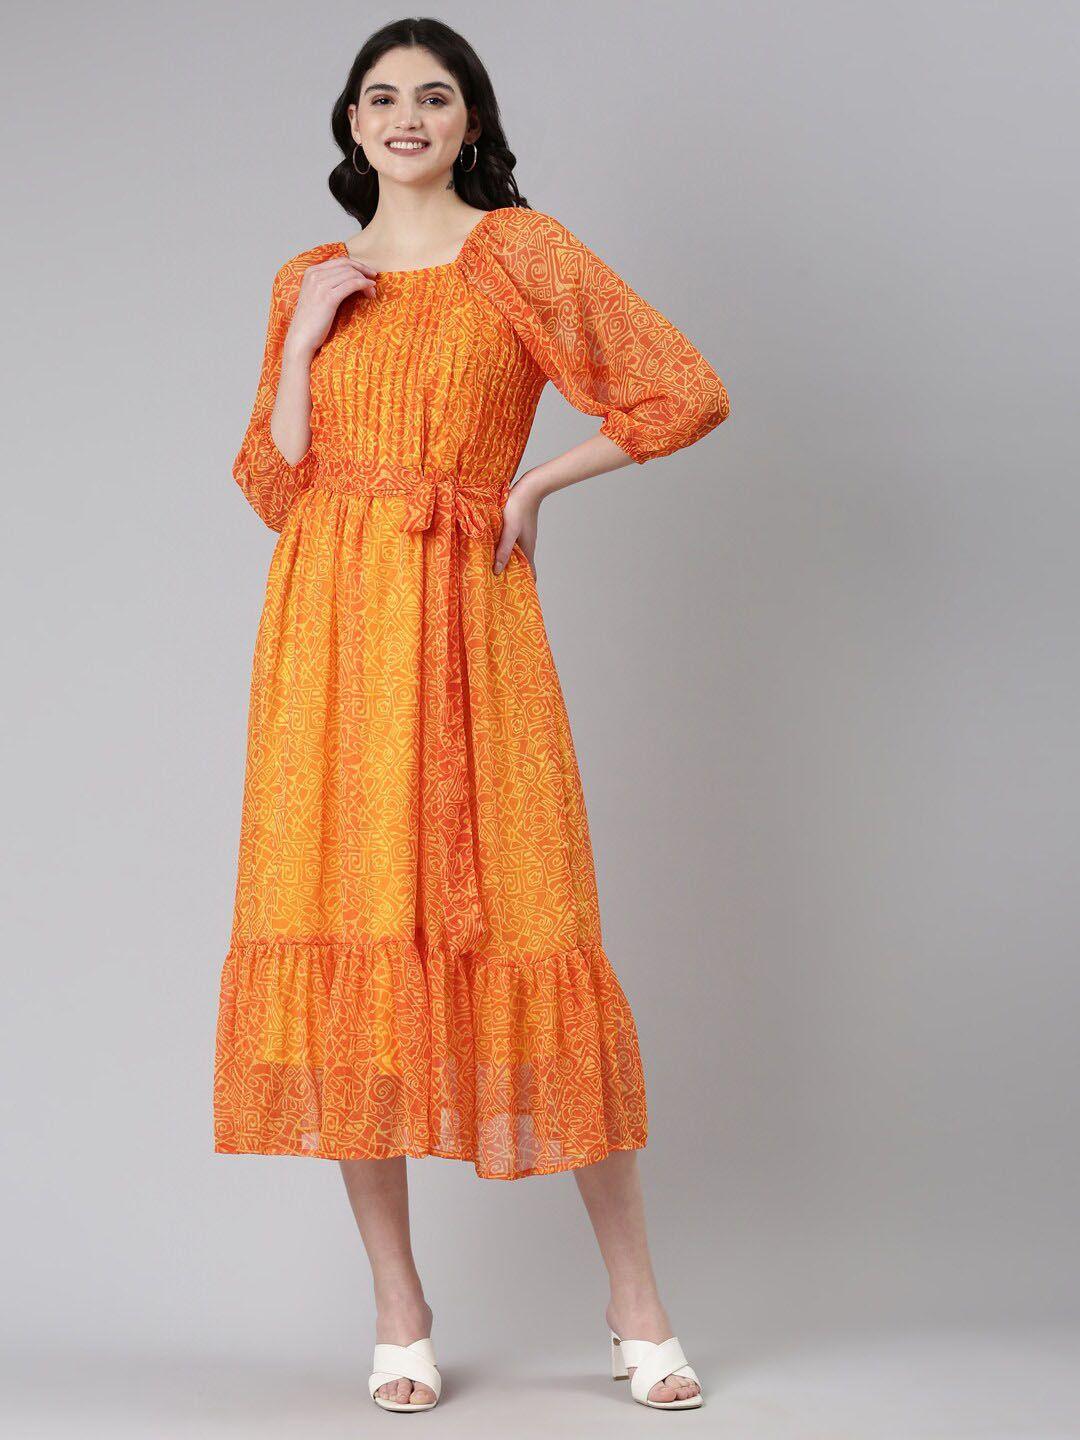 souchii mustard yellow ethnic motifs print chiffon a-line midi dress